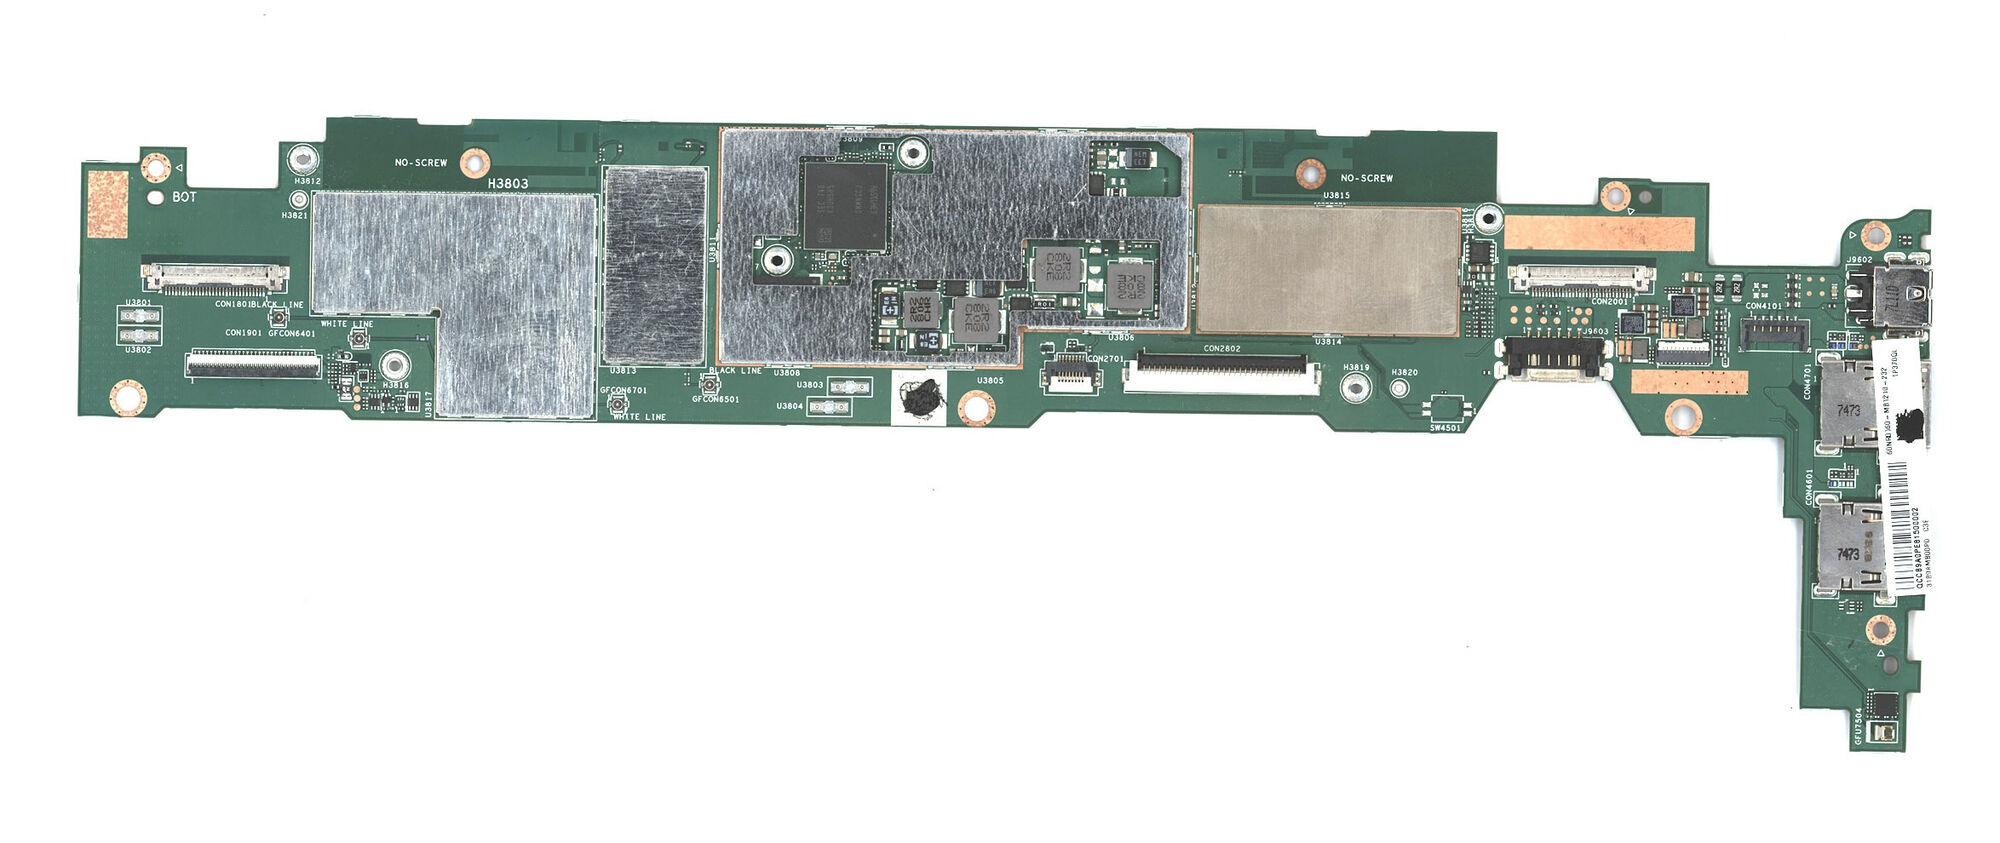 Материнская плата Asus A6V DDR2 08-26AV0022Q rev2.2